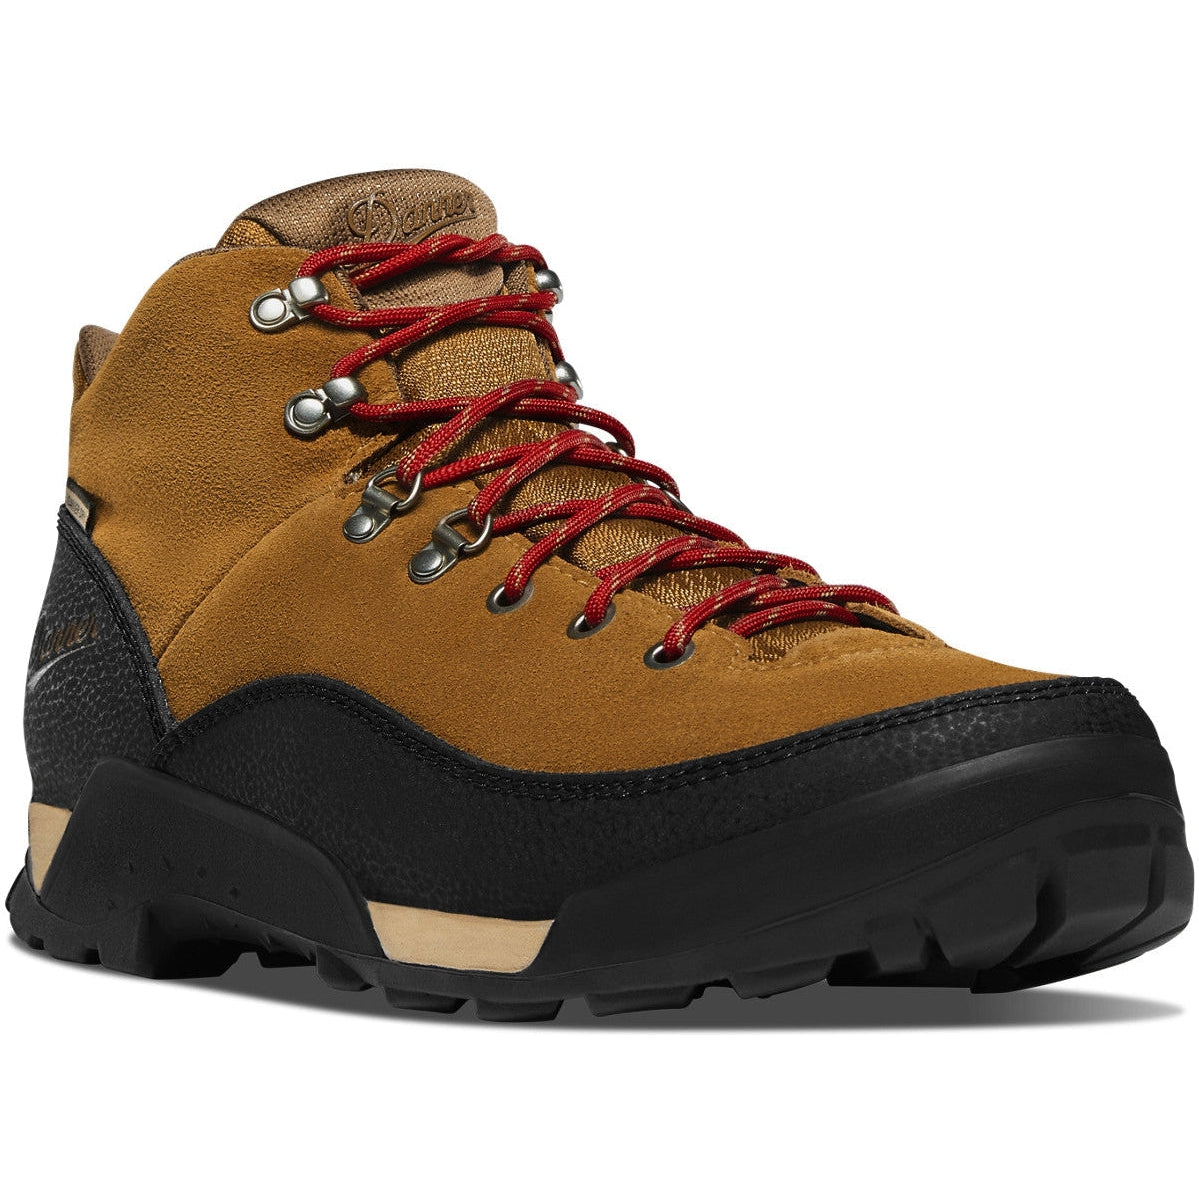 Danner Men's Panorama 6" Waterproof Hiking Shoe - Brown/Red - 63433  - Overlook Boots